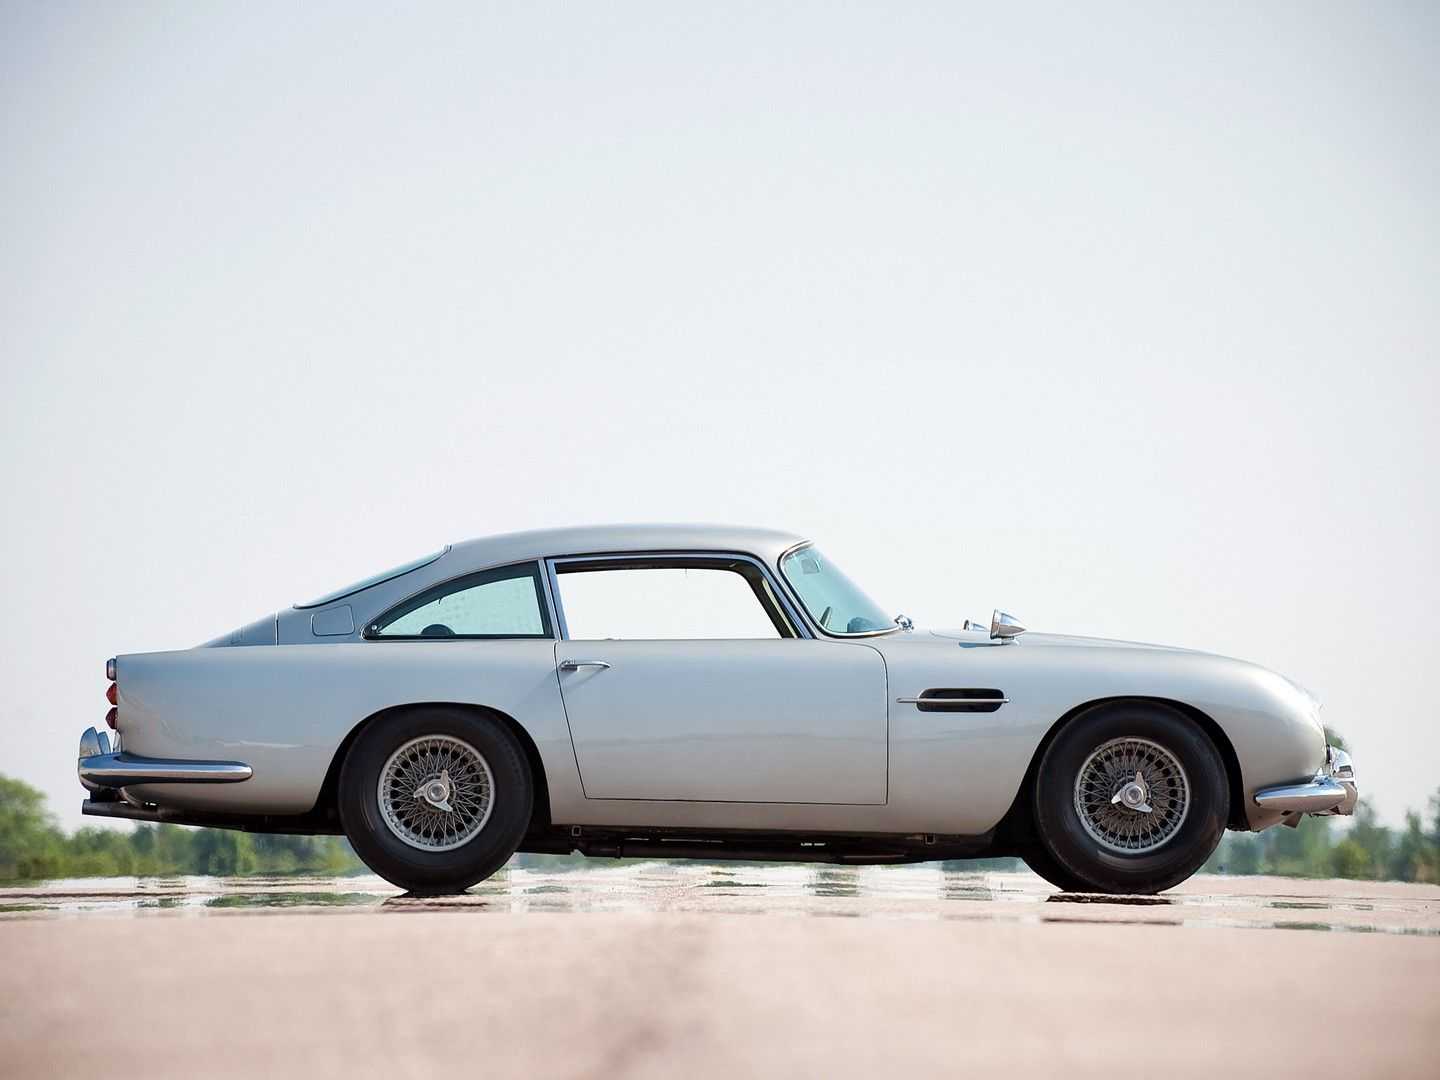 Британский бизнесмен и любитель спорткаров Дэвид Браун представил публике свое первое творение Ретро-кузов выполненный в классическом дизайнерском стиле скрывает платформу Jaguar XKR